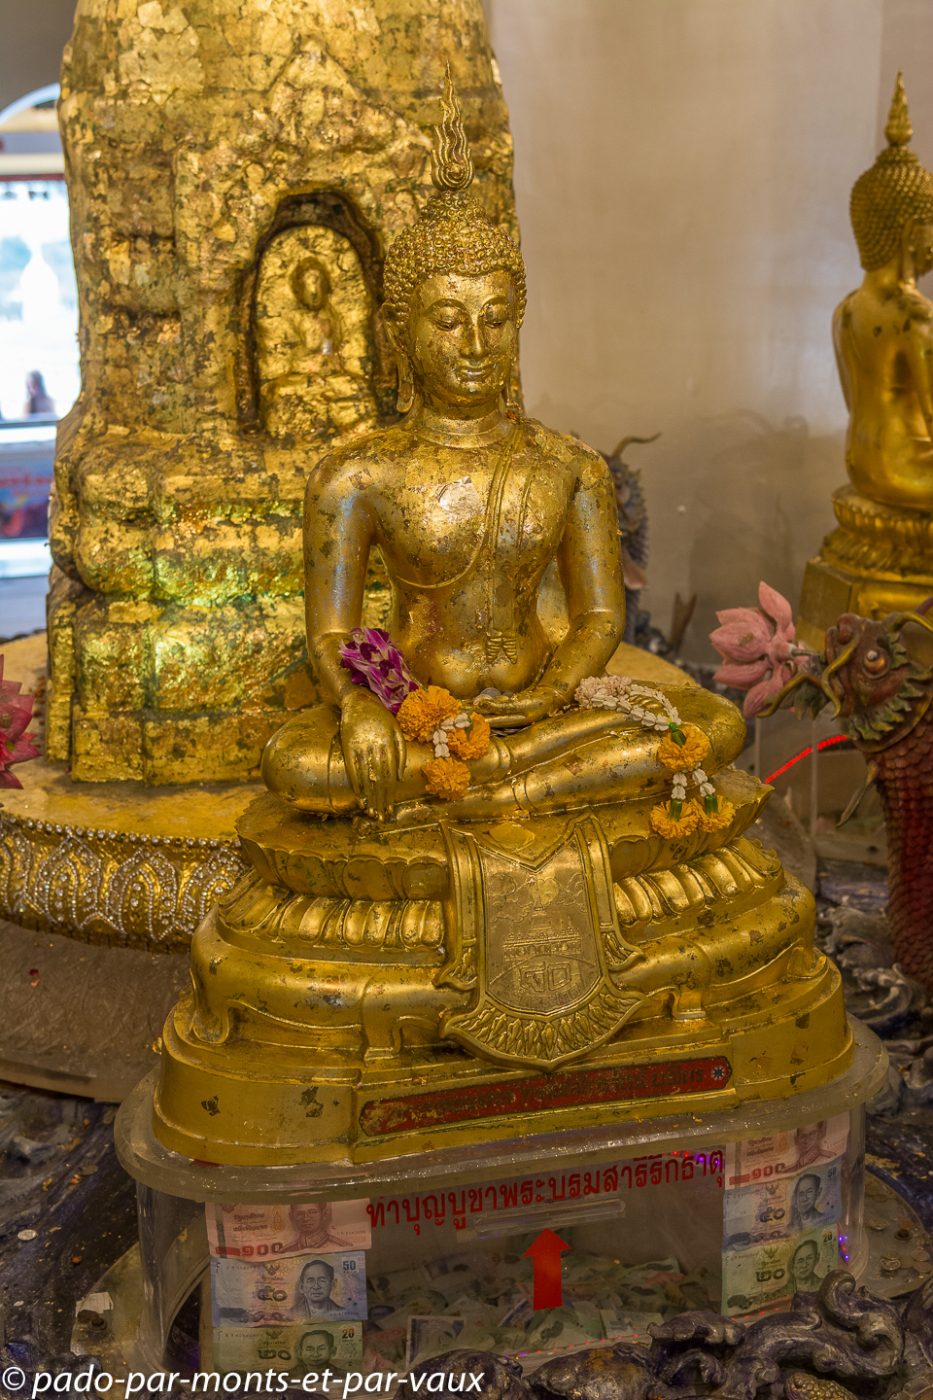 Bangkok - Golden temple